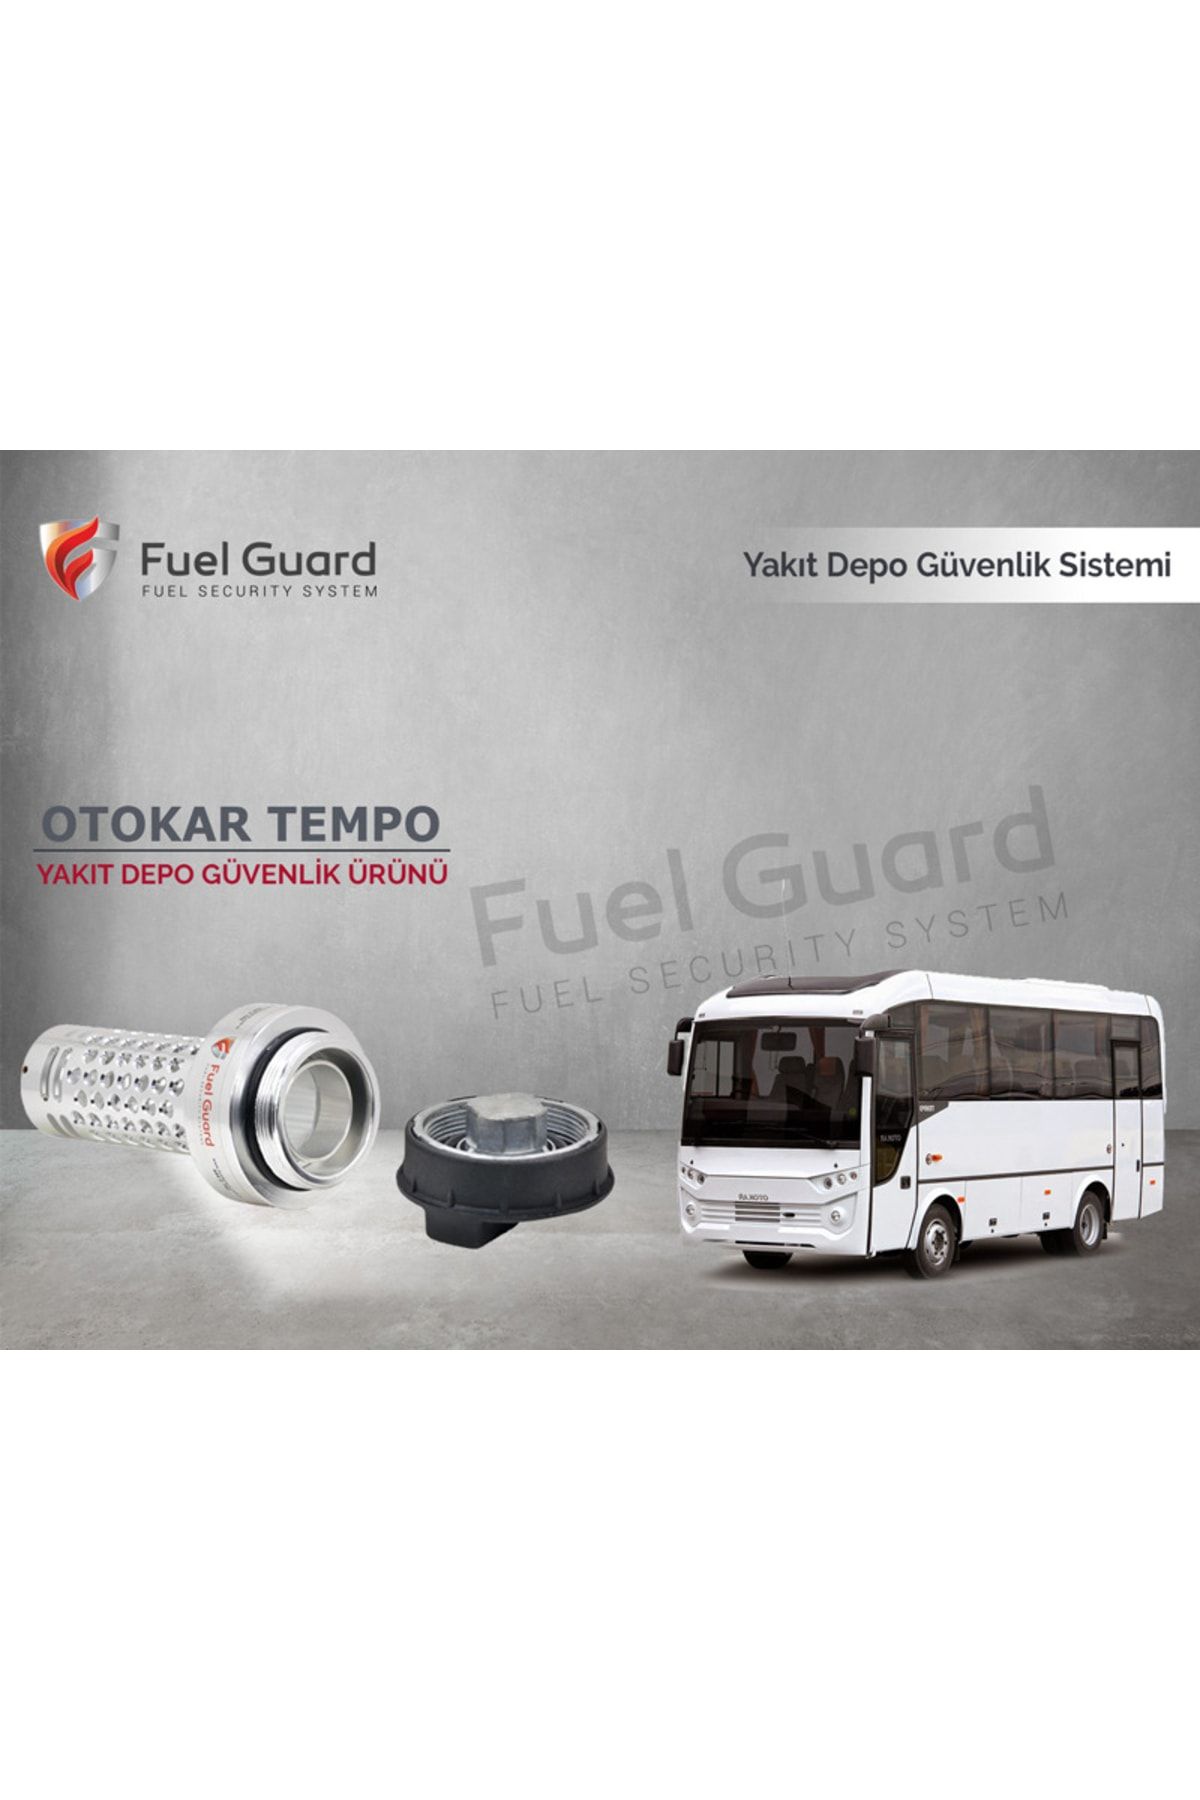 FUEL GUARD Otokar Tempo Minibüs-midibüs Yakıt Depo Koruma Cihazı